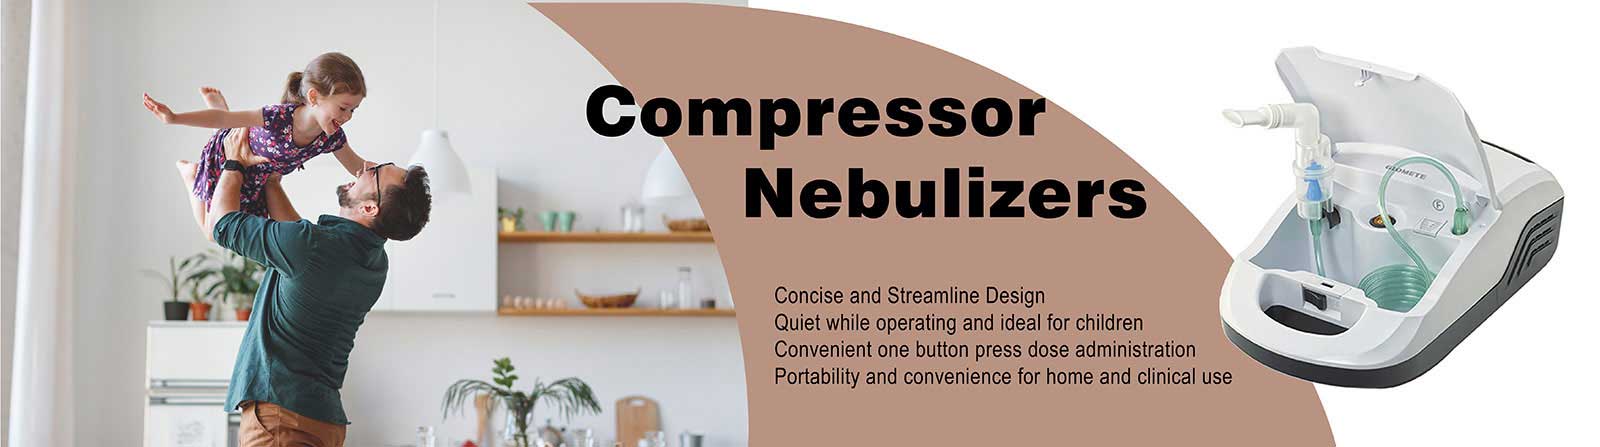 Compressor Nebulizers